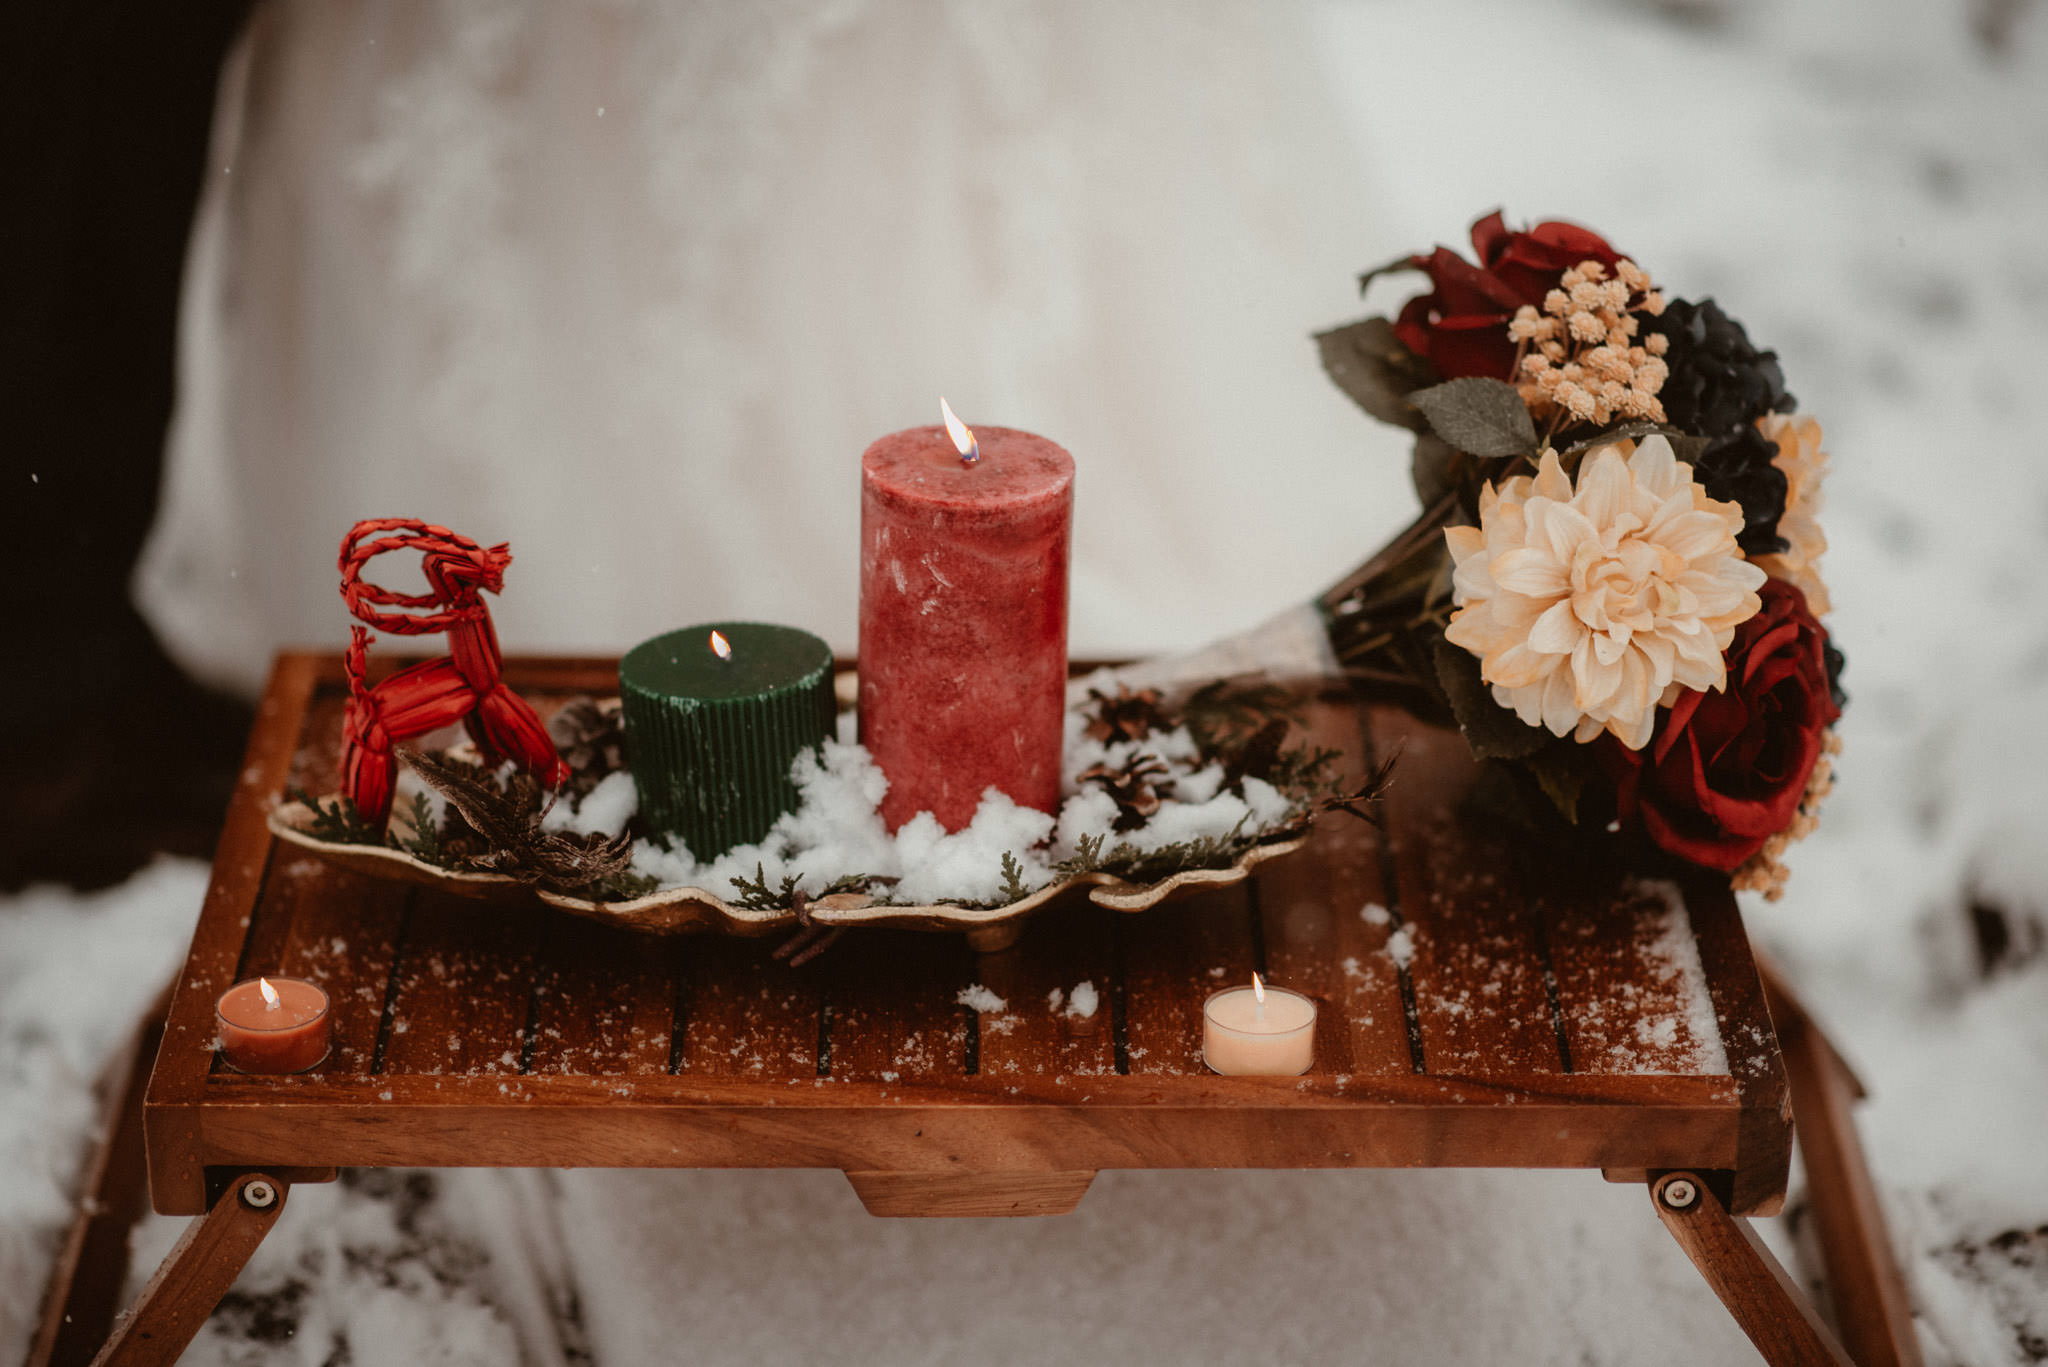 Yule altar setup at winter elopement in Michigan